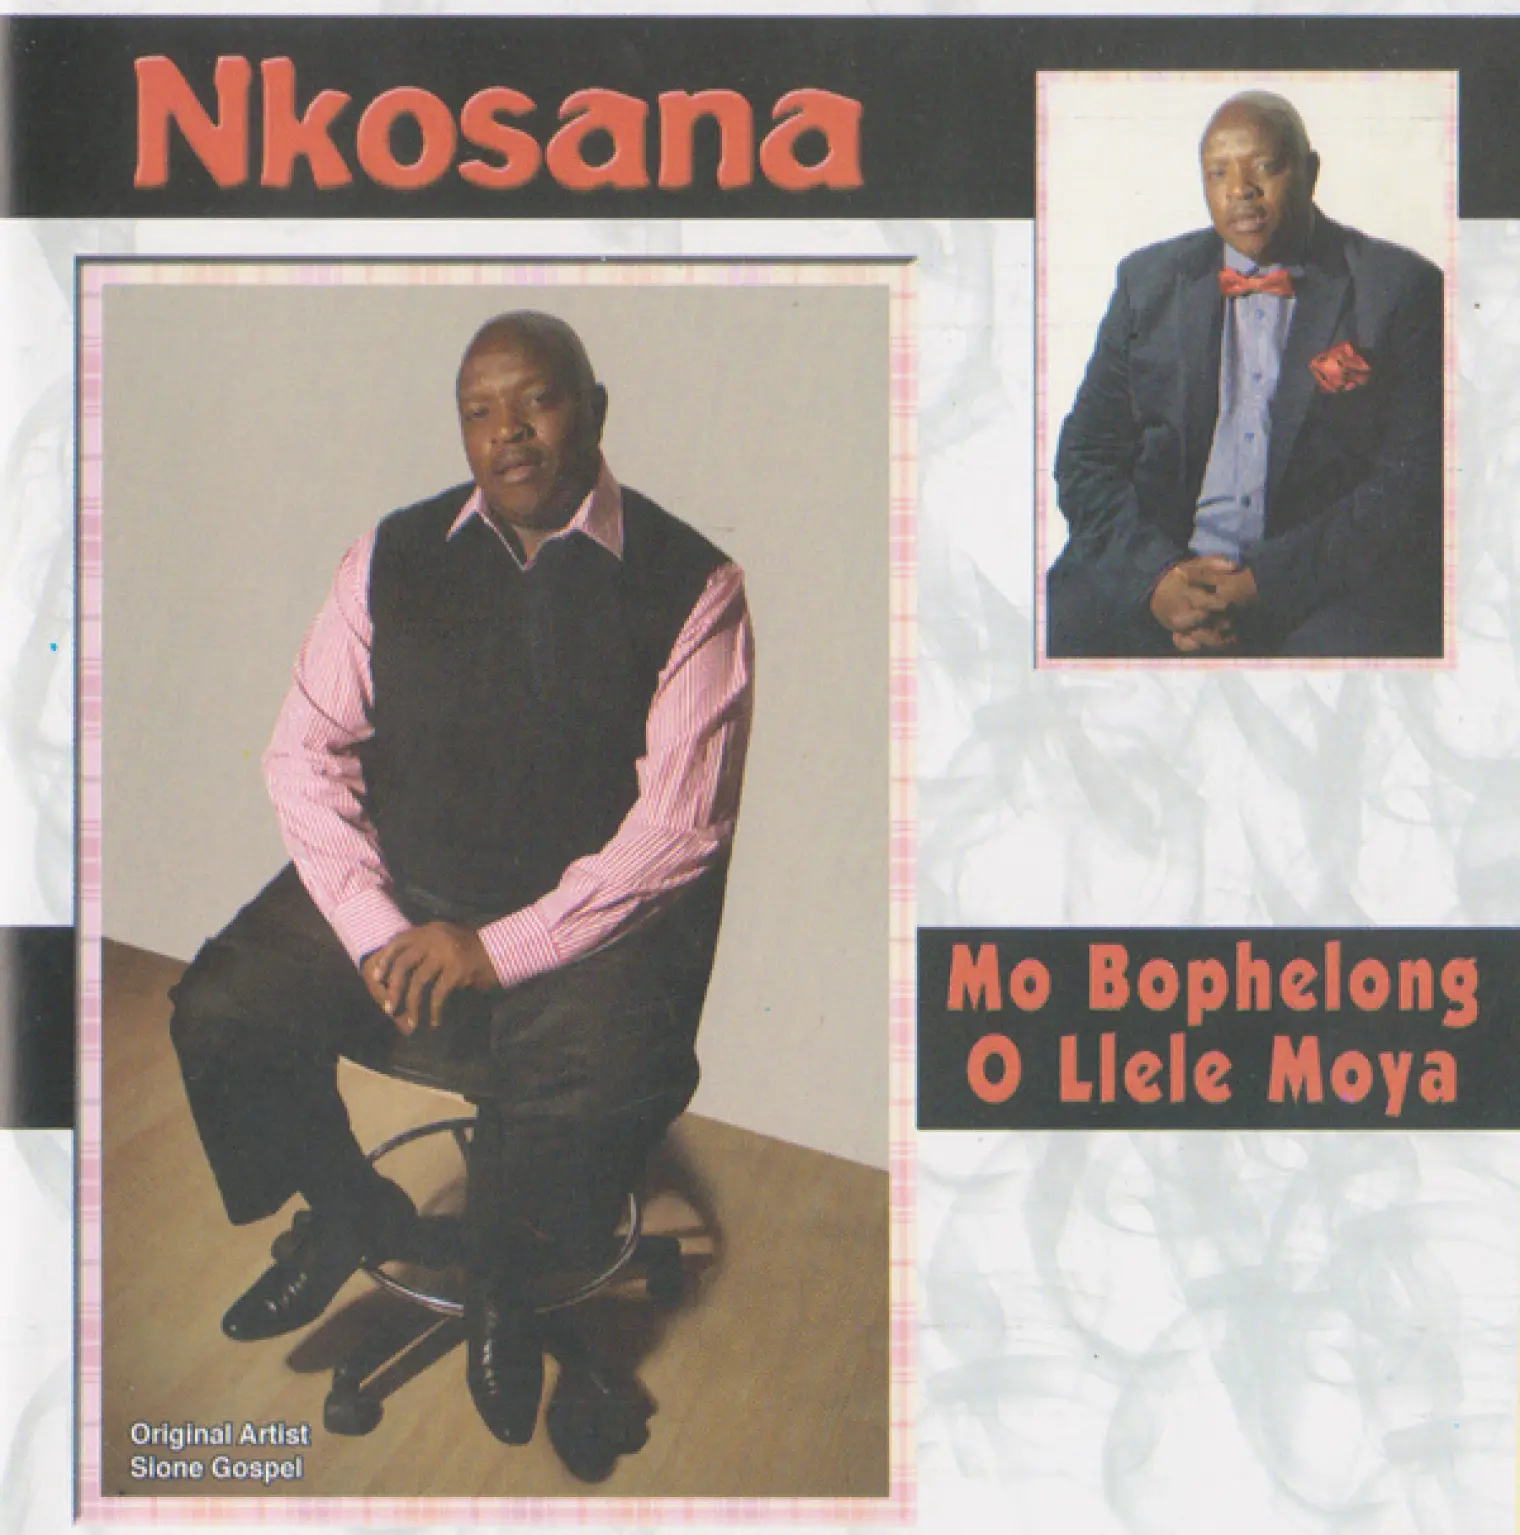 Mo Bophelong O Llelle Moya -  Nkosana 